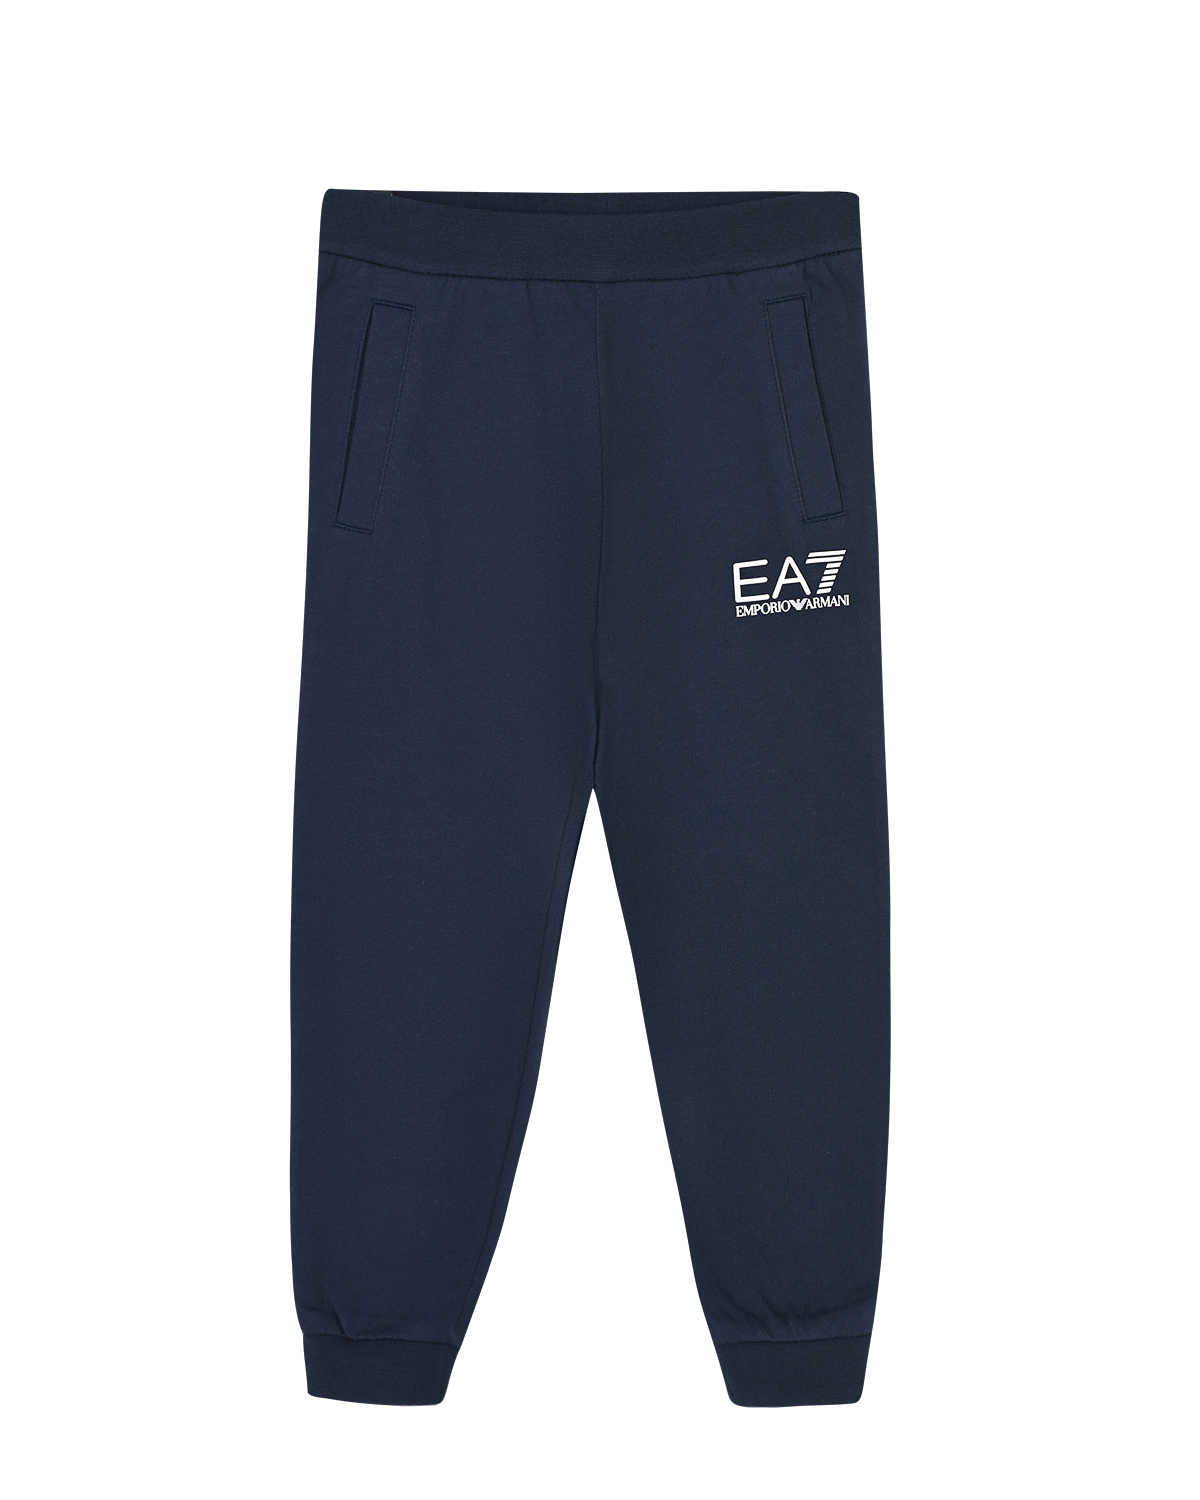 Где купить Синие спортивные брюки с логотипом EA7 детские EA7 Emporio Armani 